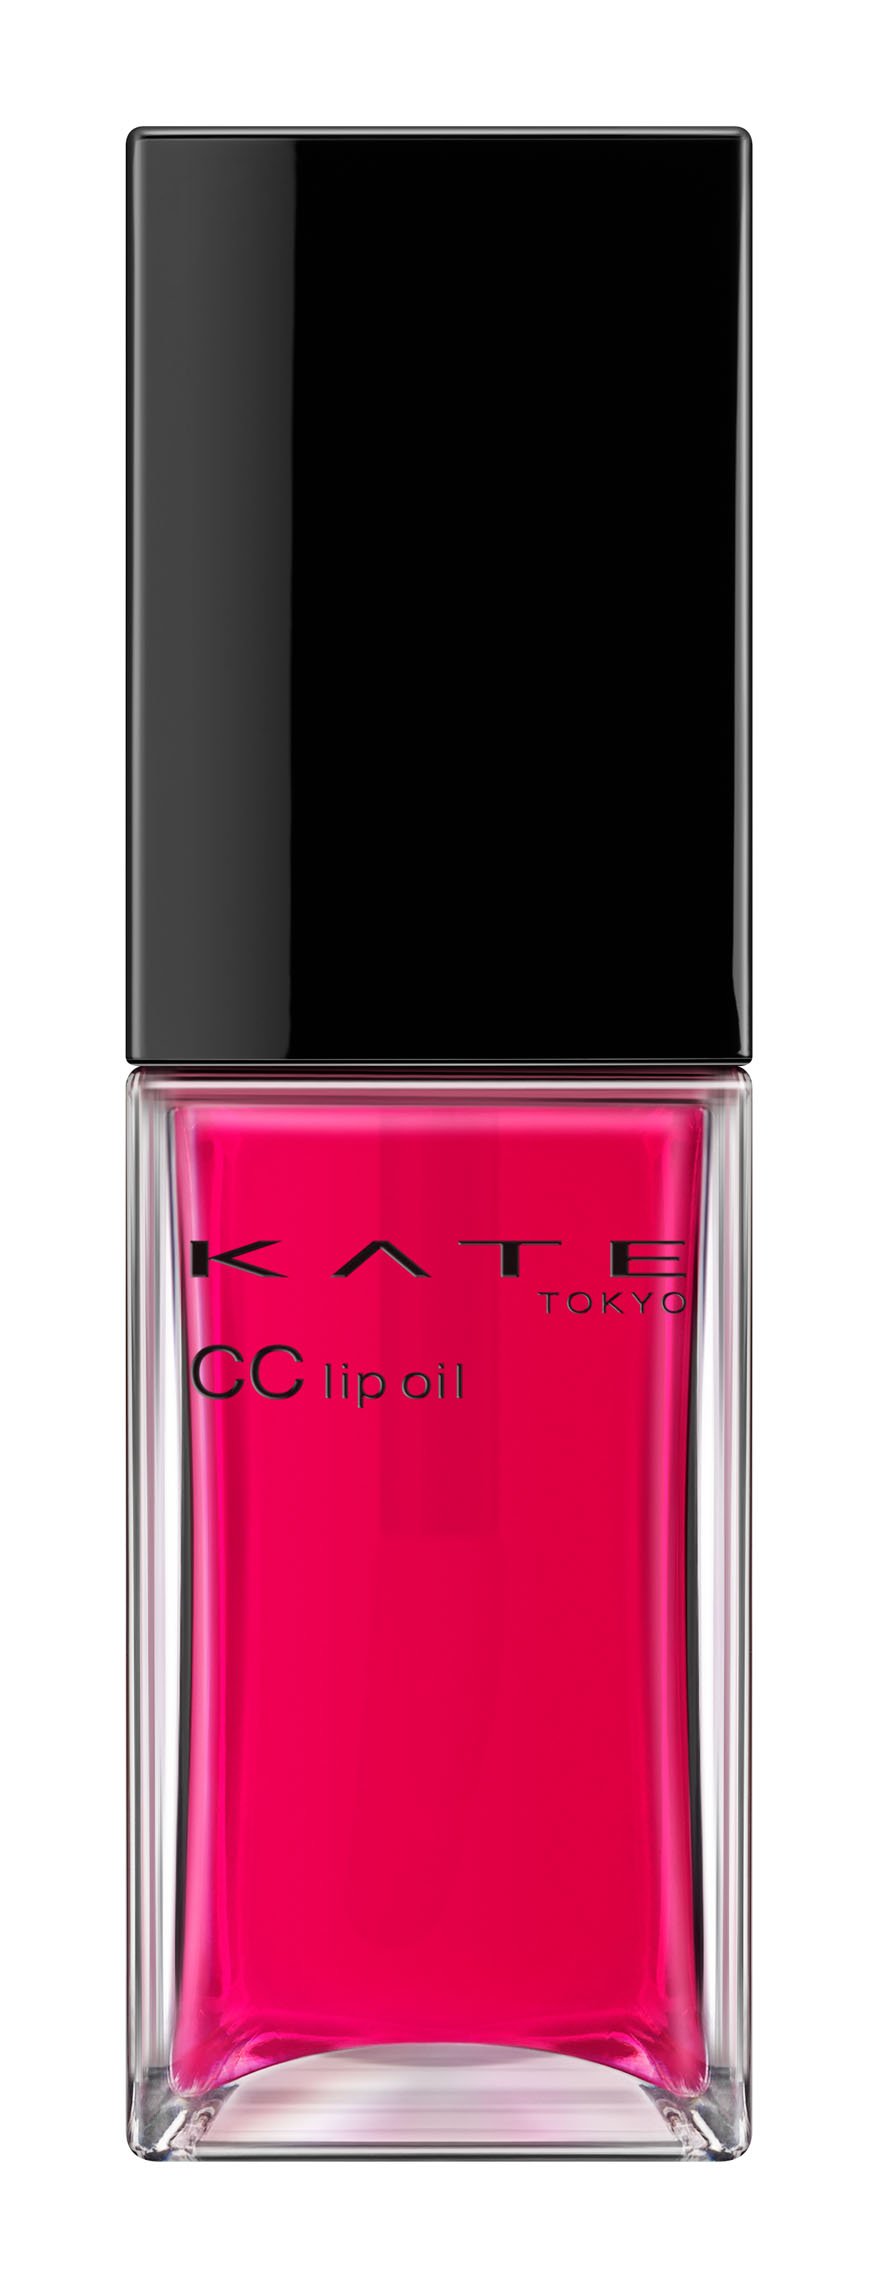 ケイト CCリップオイル 02 TRANS PINK 透明感のあるピンク